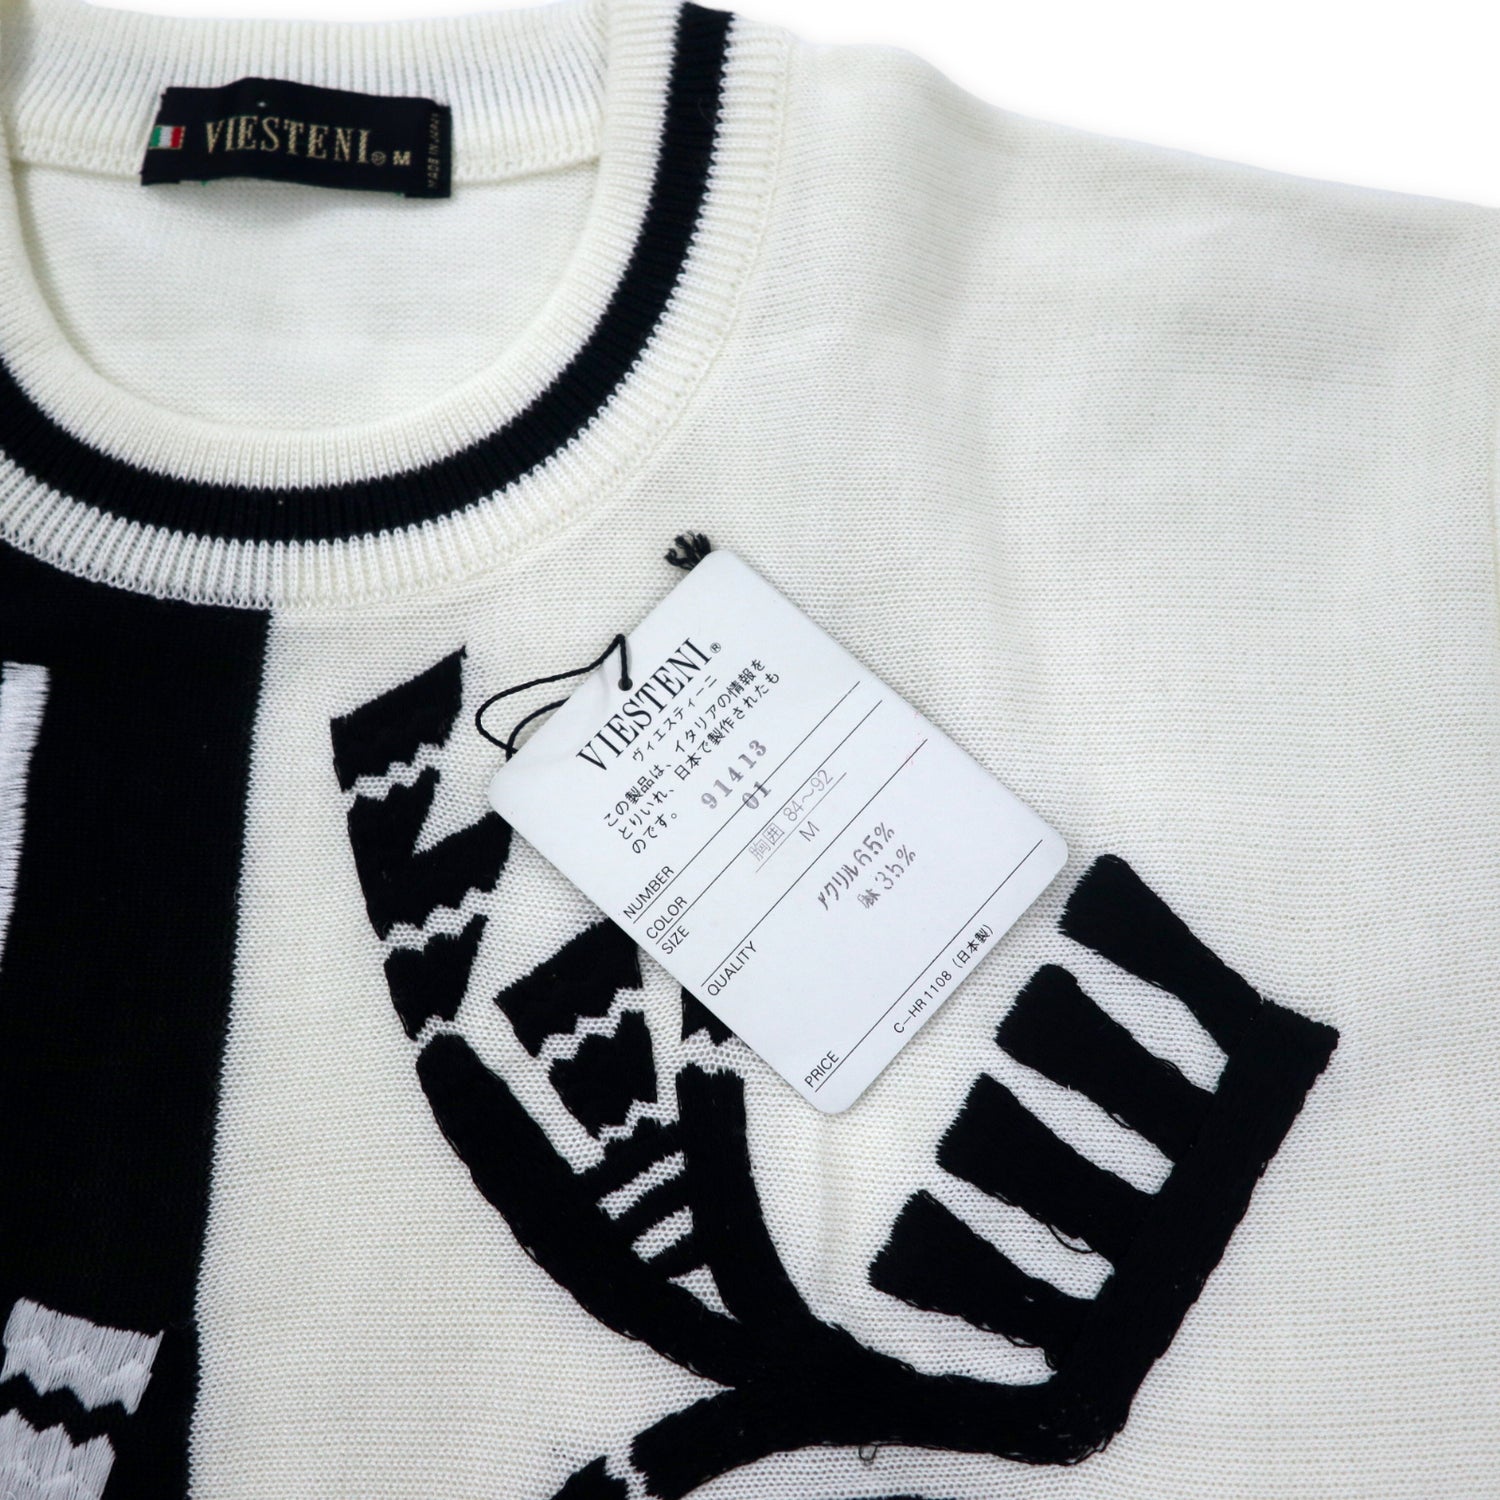 VIESTENI Retro Bi COLLAR Knit Sweater M White Black Acrylic Linen